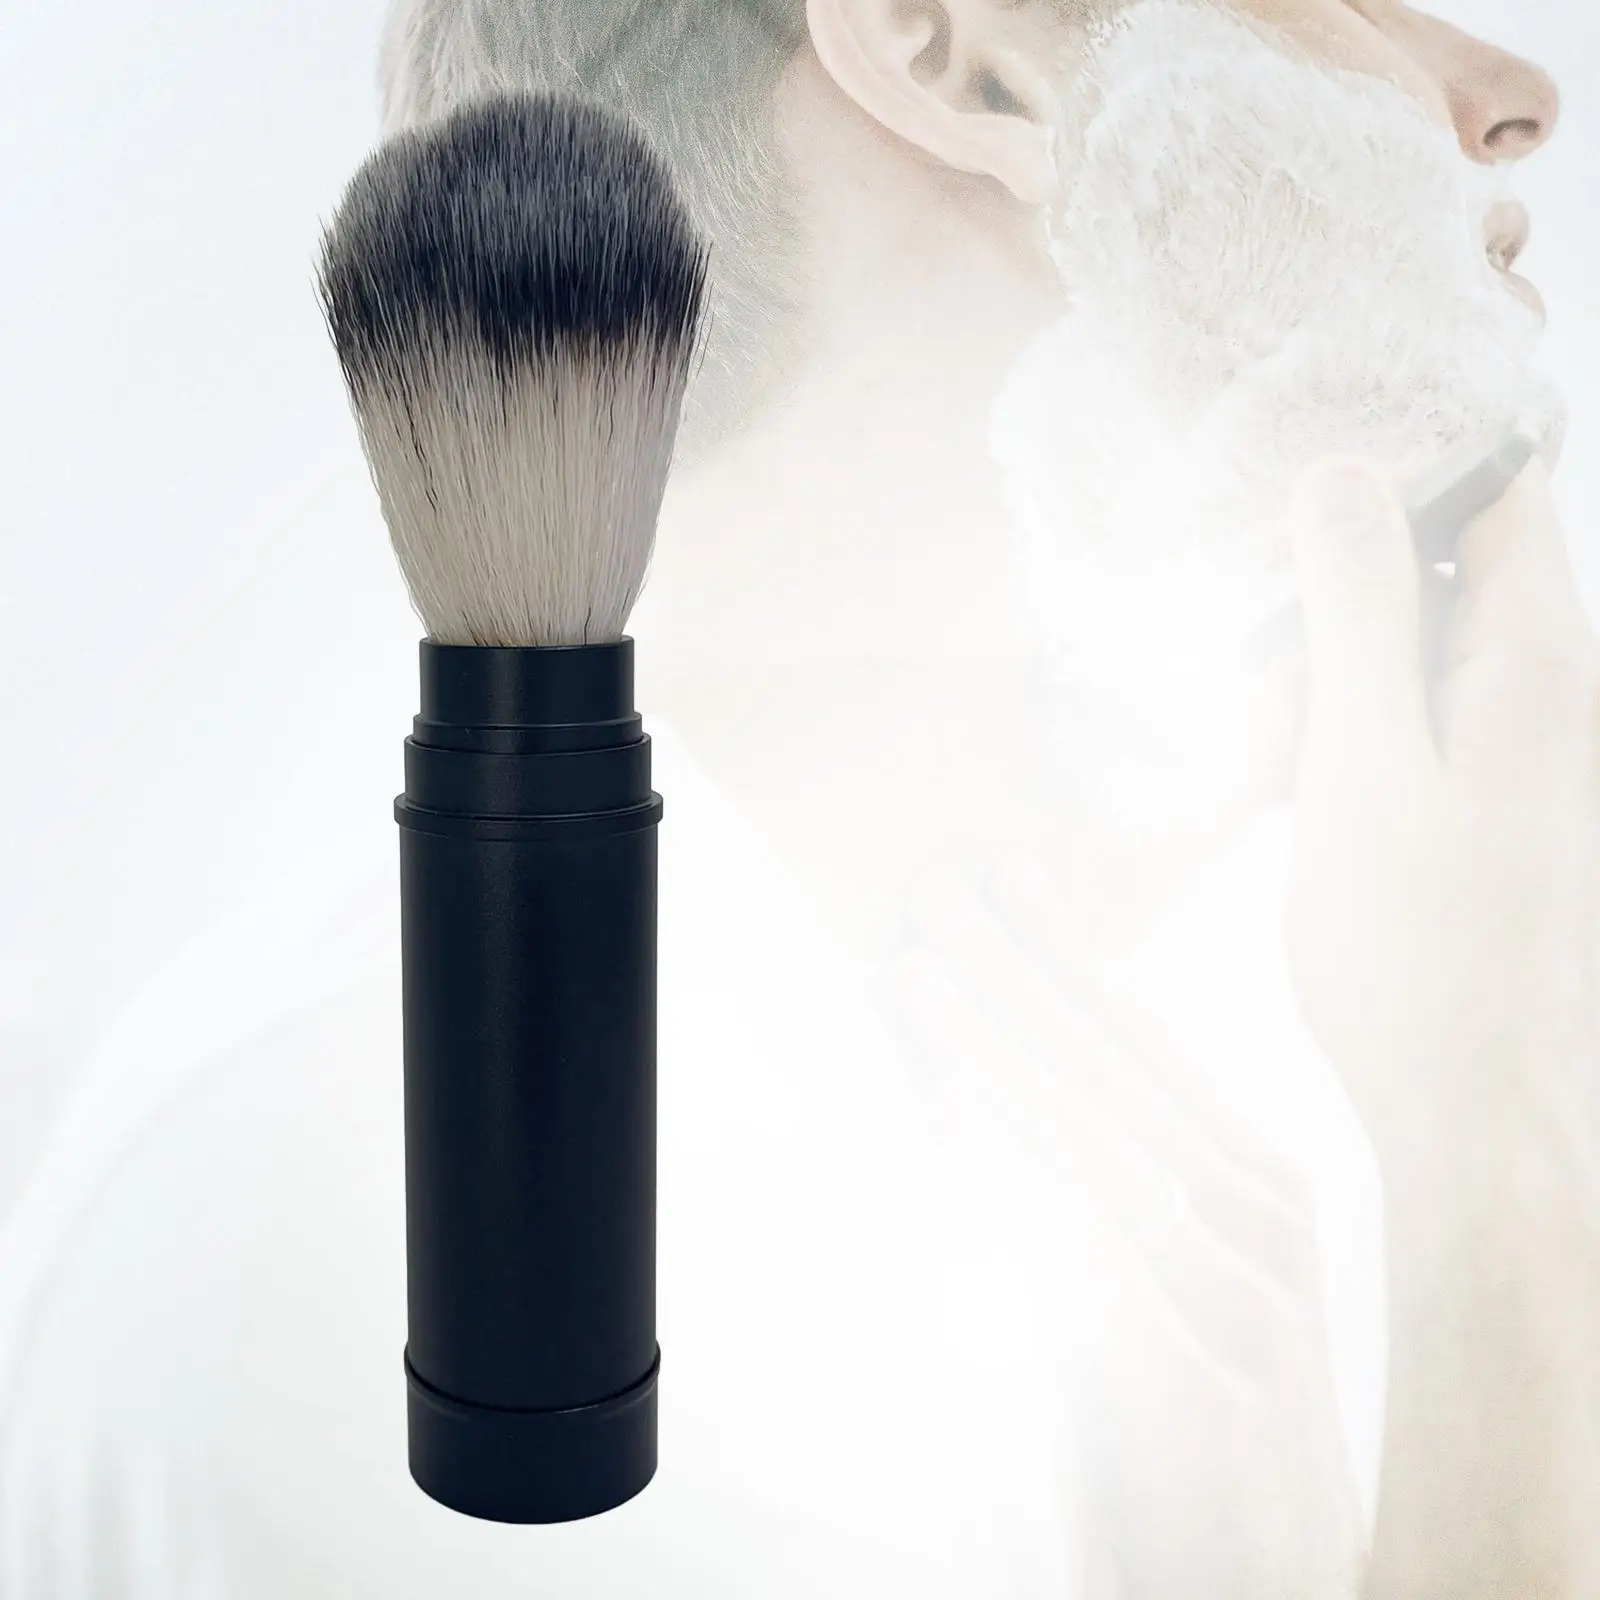 Shaving Brush for Father Husband Easy Foaming Professional Hair Salon Tool Beard Shaving Brush for Salon Home Travel Barbershop